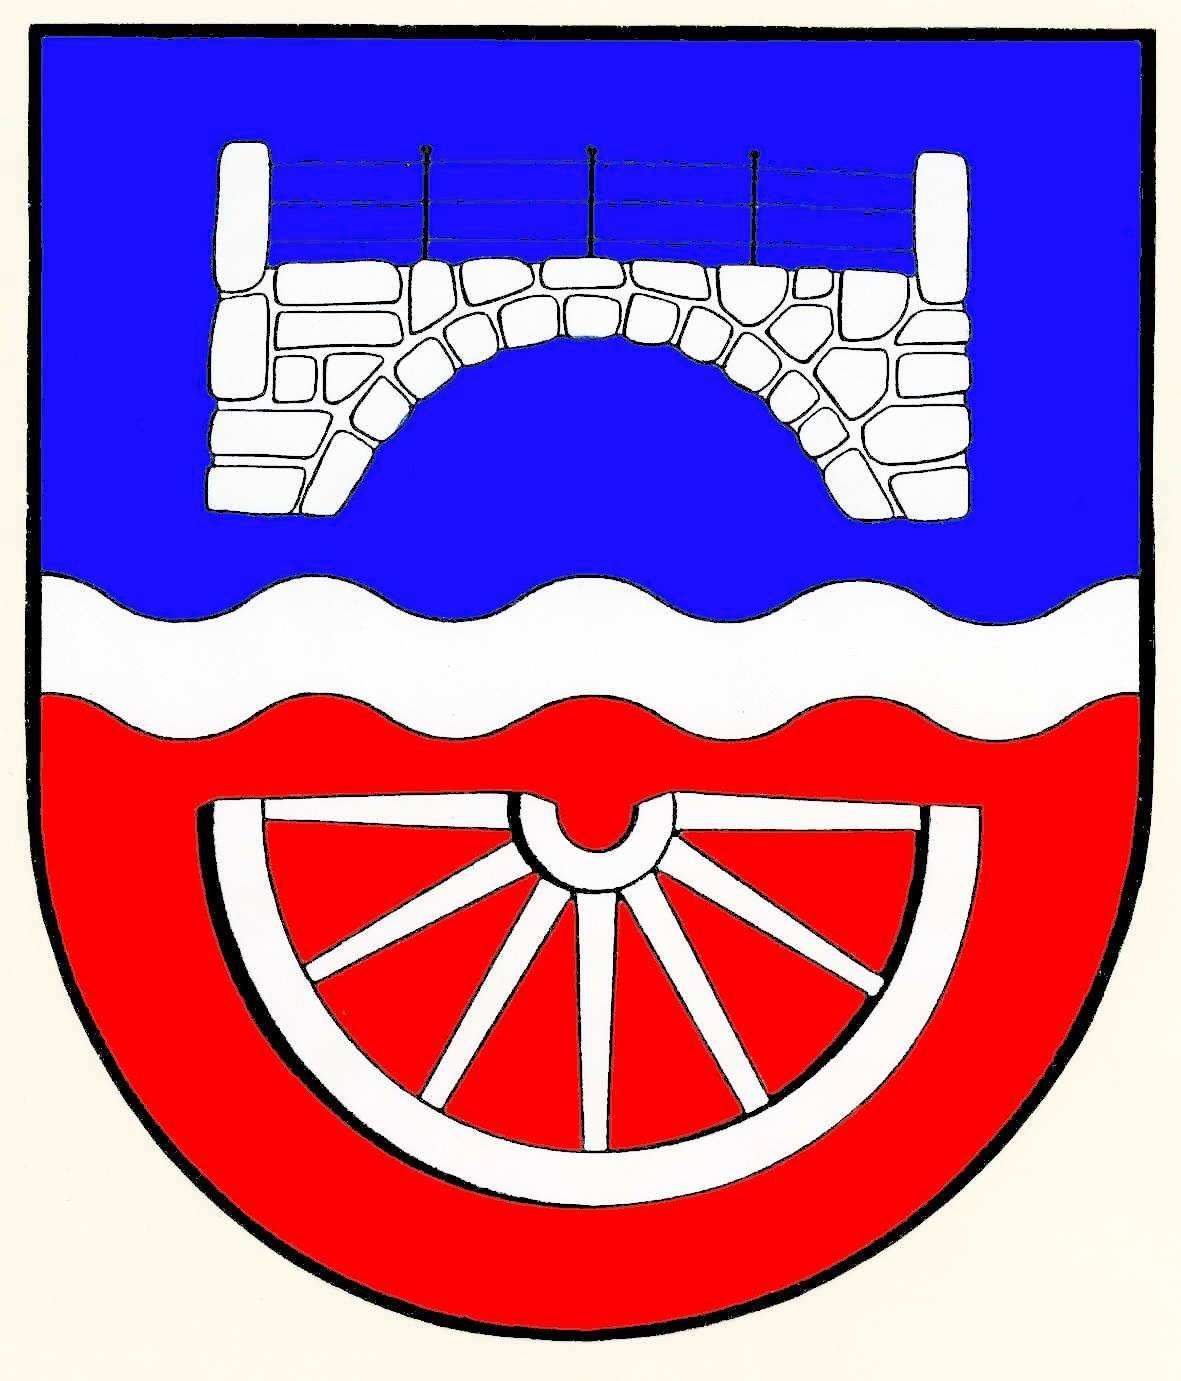 Gemeinde Brügge, Kreis Rendsburg-Eckernförde Nagel, Uwe, Bergenhusen Brücke, Wellenbalken Wagenrad, unterhalbes, Von Blau und Rot durch einen silbernen Wellenbalken geteilt.